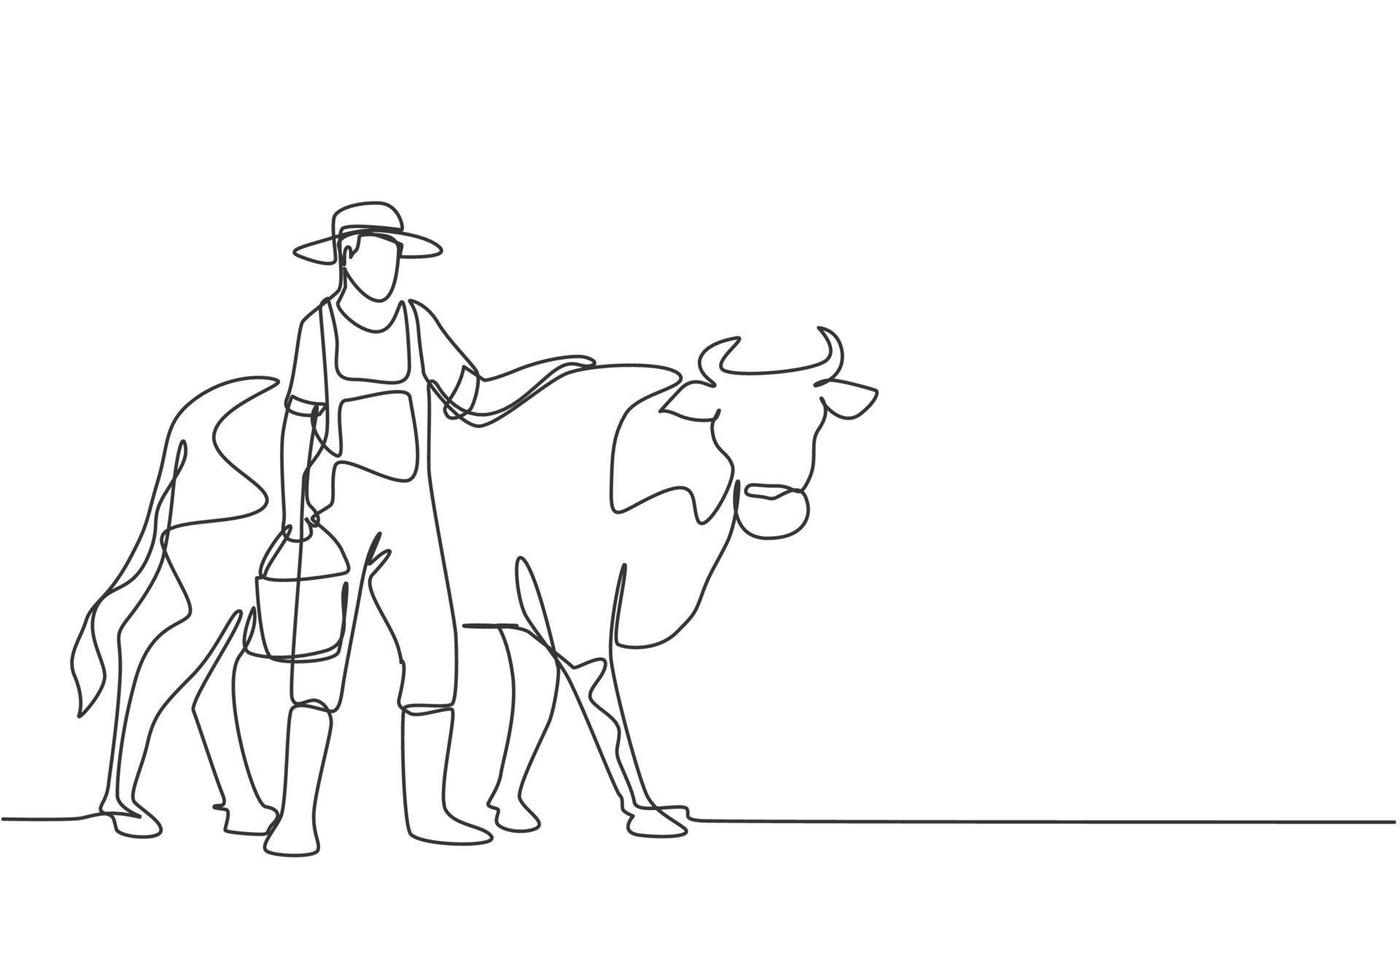 kontinuierliche eine linie, die junge männliche bauern zeichnet, die die kuh reiben, während sie einen eimer mit wasser tragen. erfolgreiche landwirtschaftliche Aktivitäten minimalistisches Konzept. einzelne Linie zeichnen Design-Vektor-Grafik-Darstellung. vektor